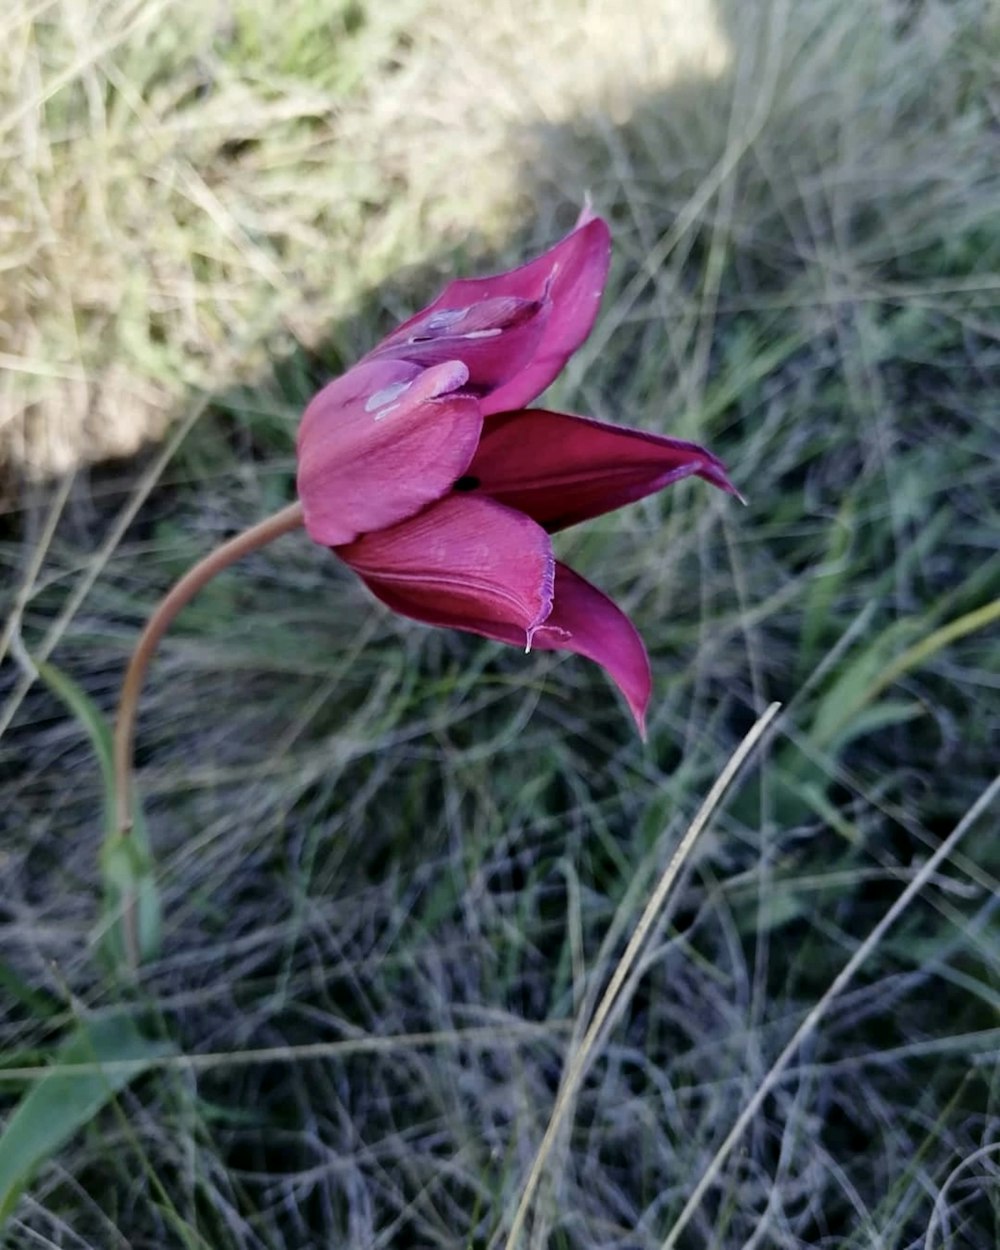 a single pink flower in a grassy field